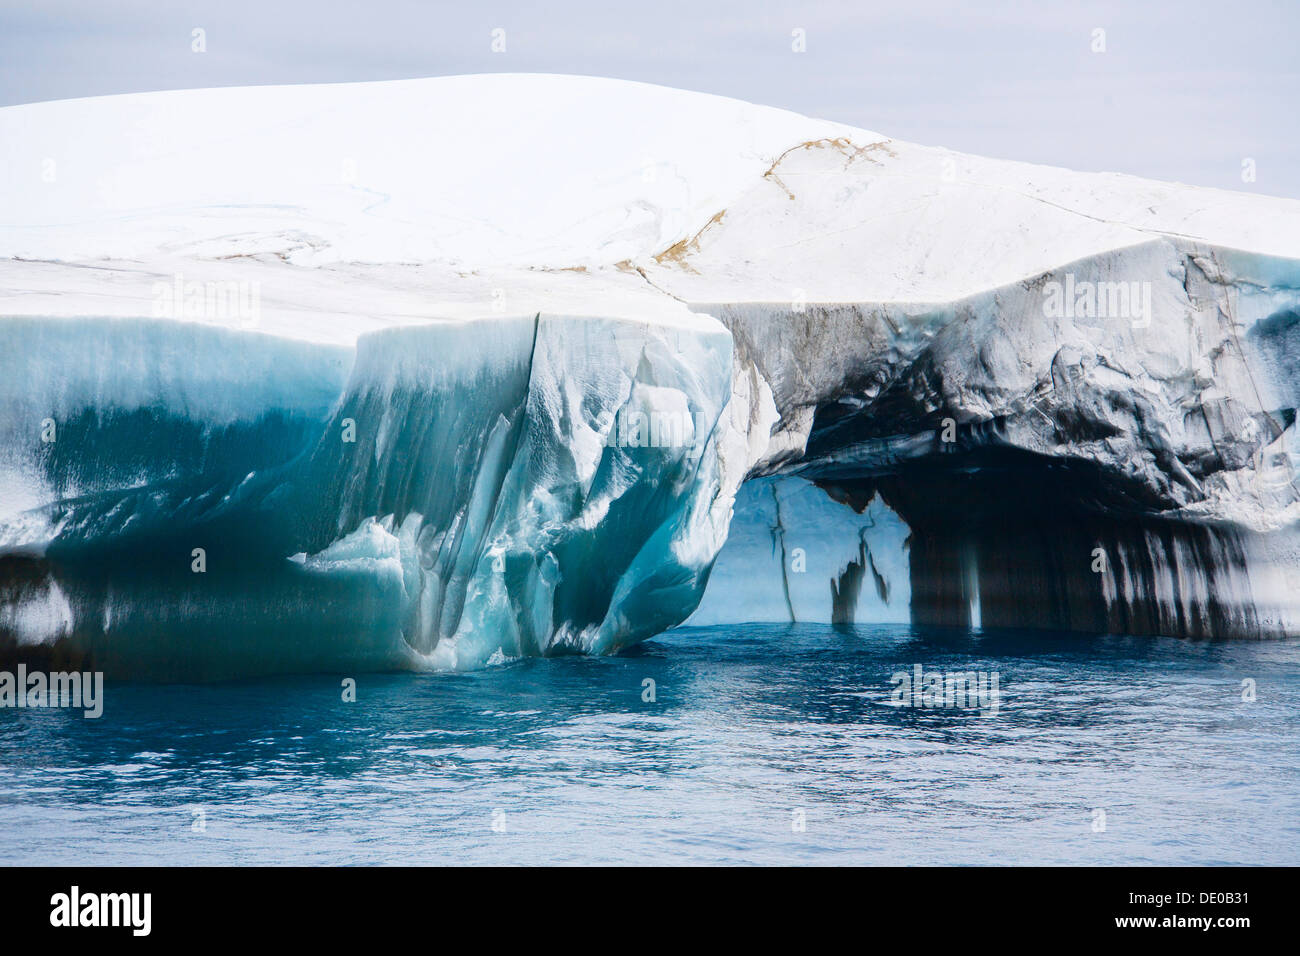 Blu e nero iceberg off Laurie Island, Washington stretto, Orcadi del Sud, Oceano Meridionale, Antartide Foto Stock